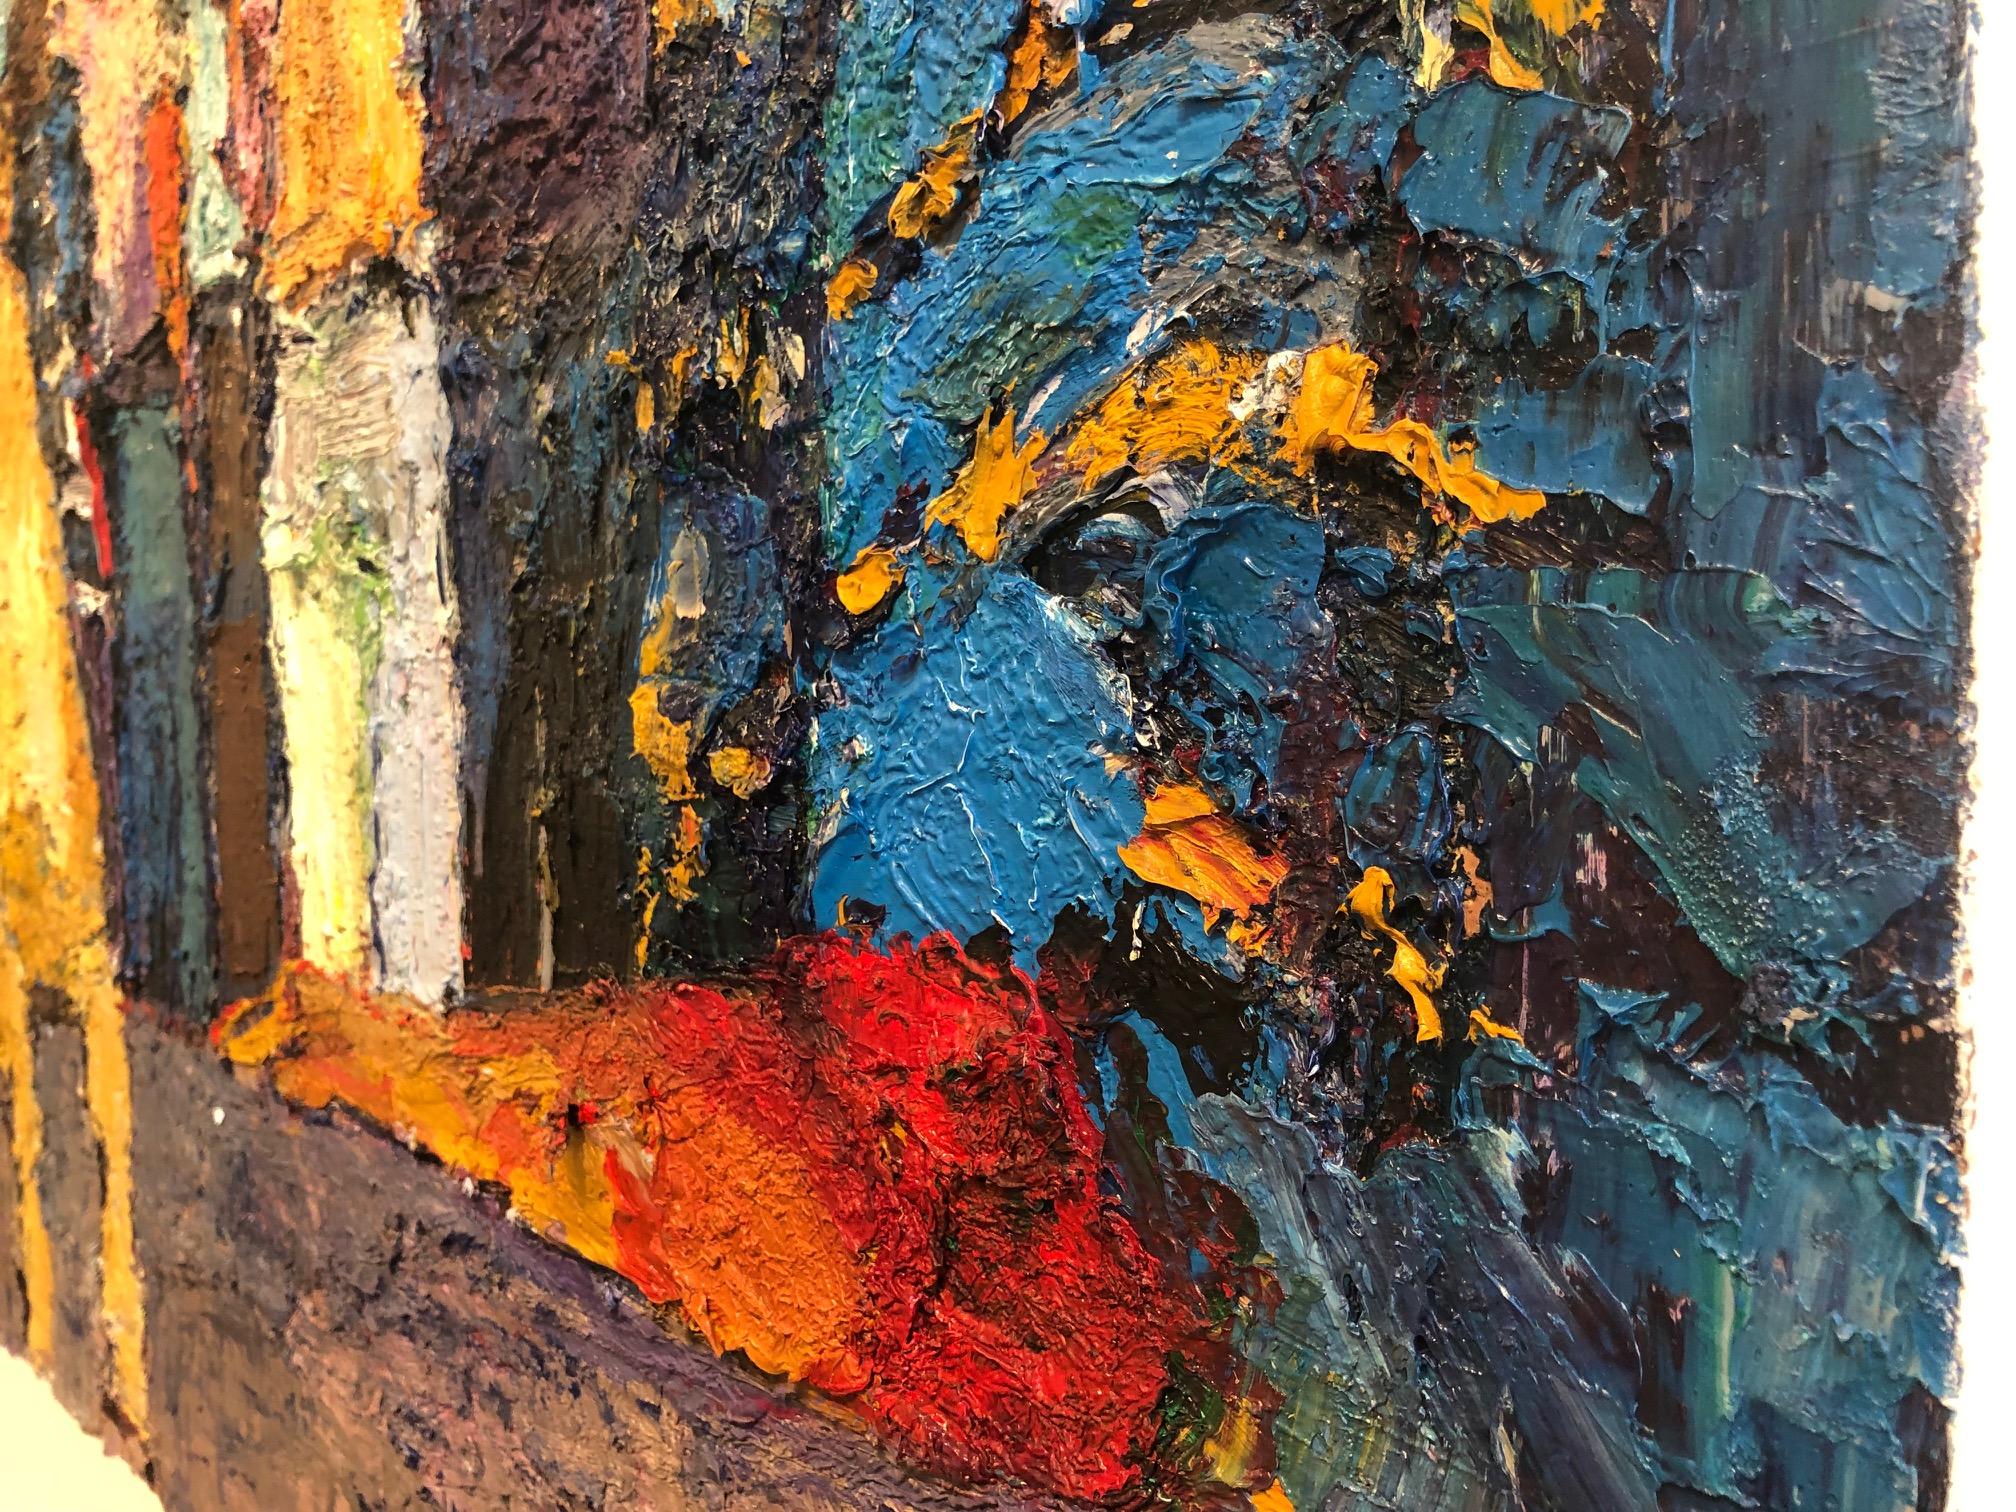 Des personnes se réunissant dans un appartement urbain sont représentées dans cette peinture à l'huile sur toile multicolore créée avec des tons bleus principalement froids qui sont contrebalancés par la chaleur du rouge pâle et de l'or, comme dans